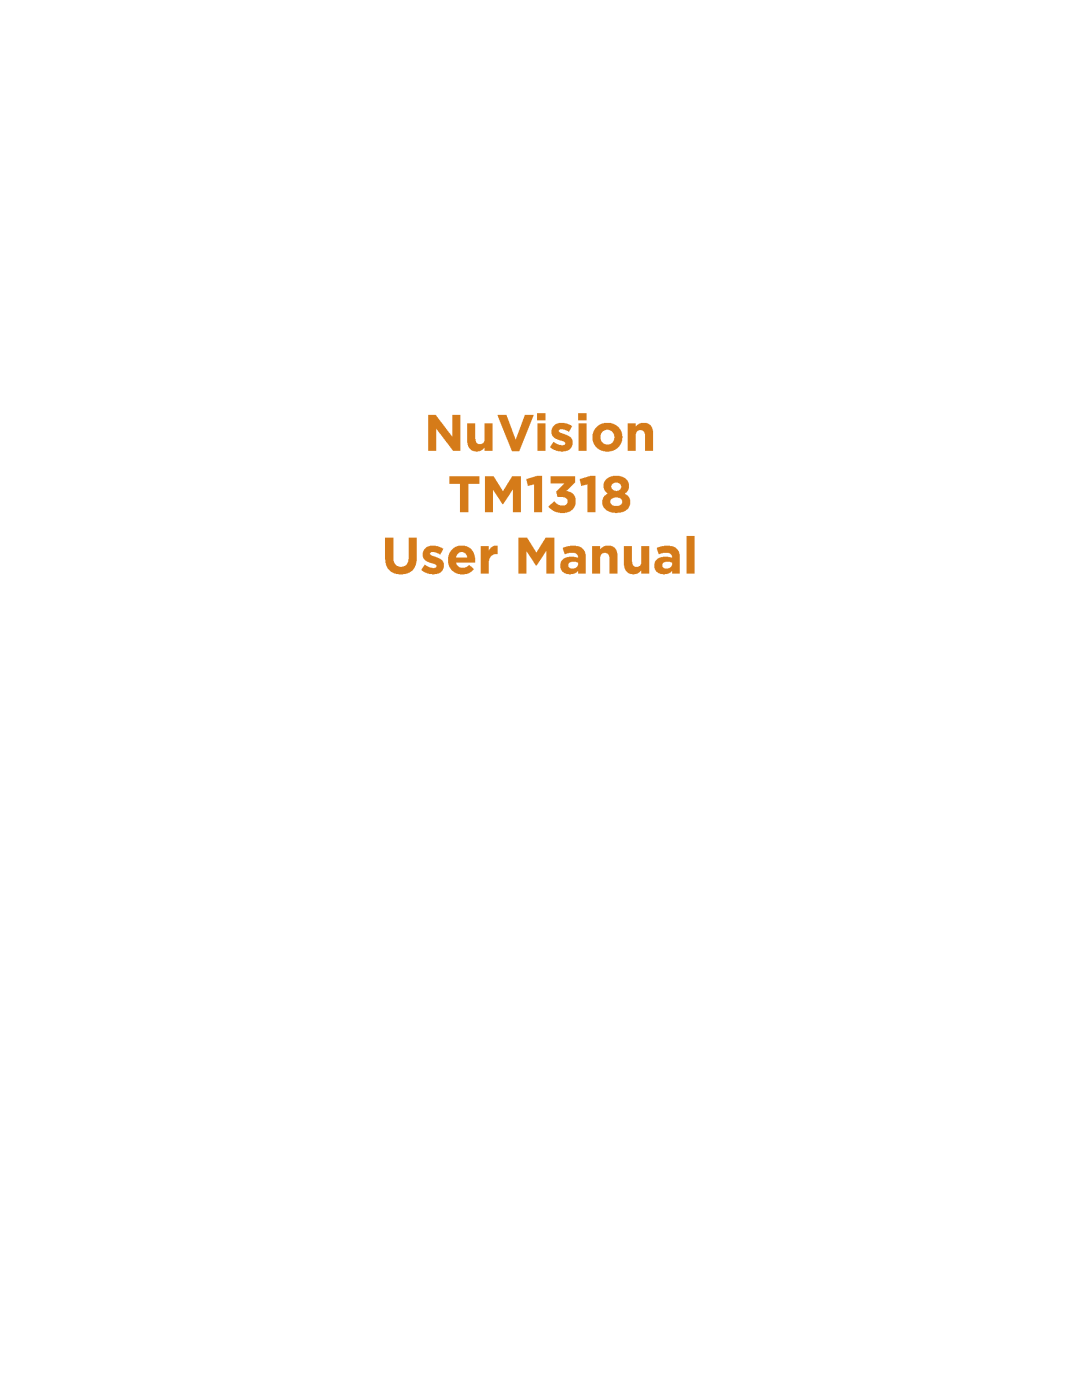 NuVision TM1218 user manual NuVision TM1318 User Manual 